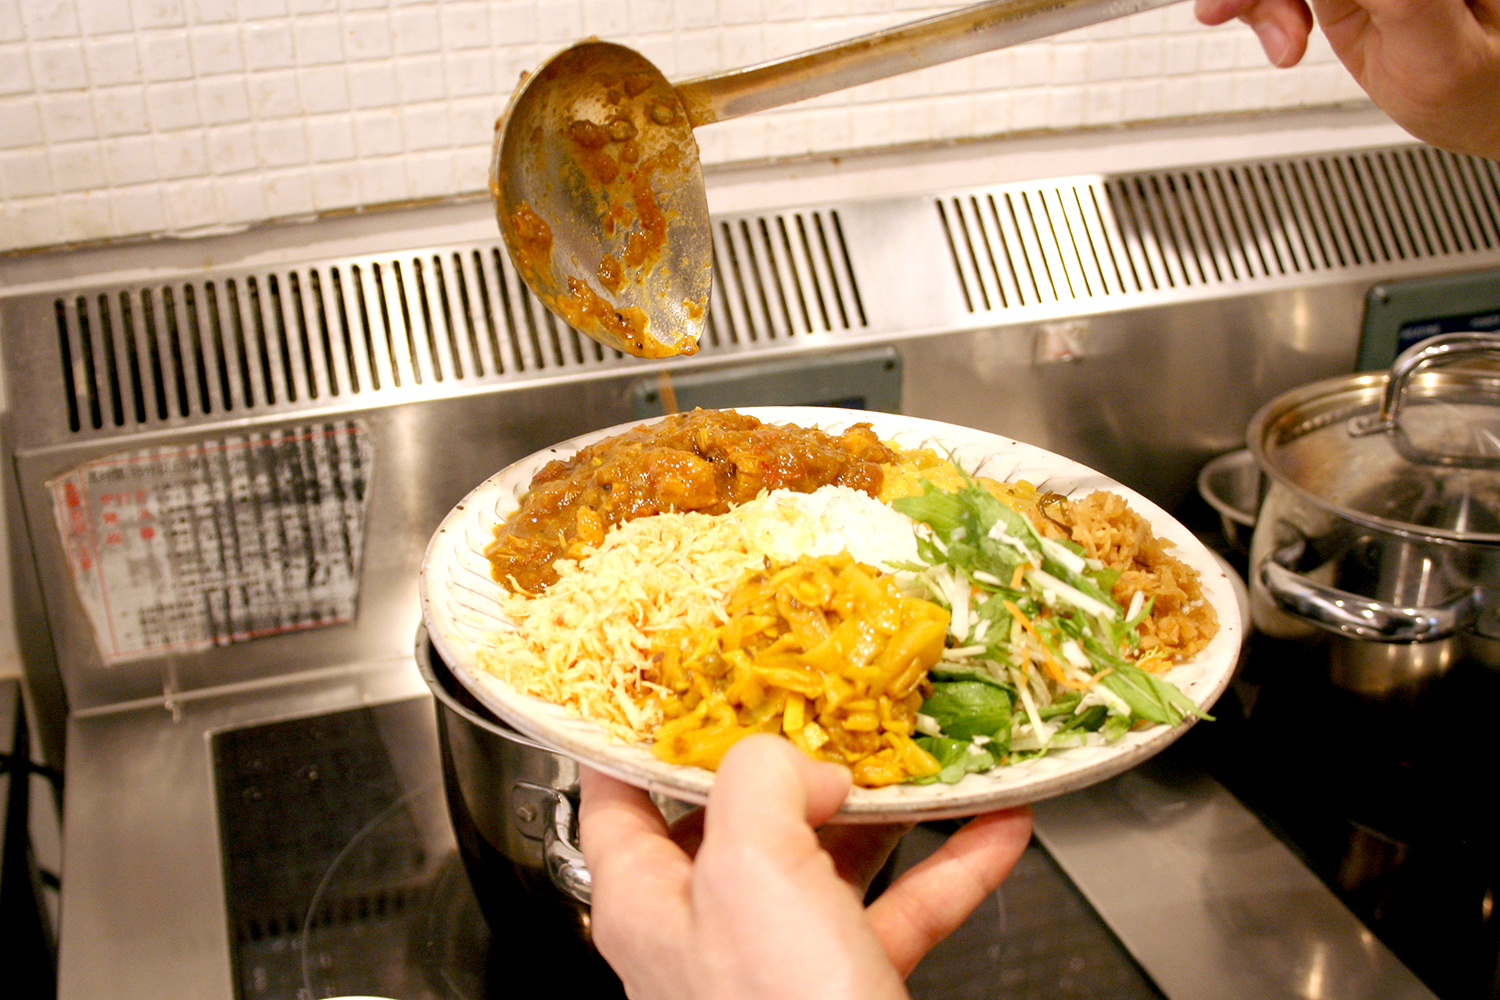 スリランカのカレーは、カレーのほか、一皿にたくさんの種類のおかずが盛られているのが特徴。